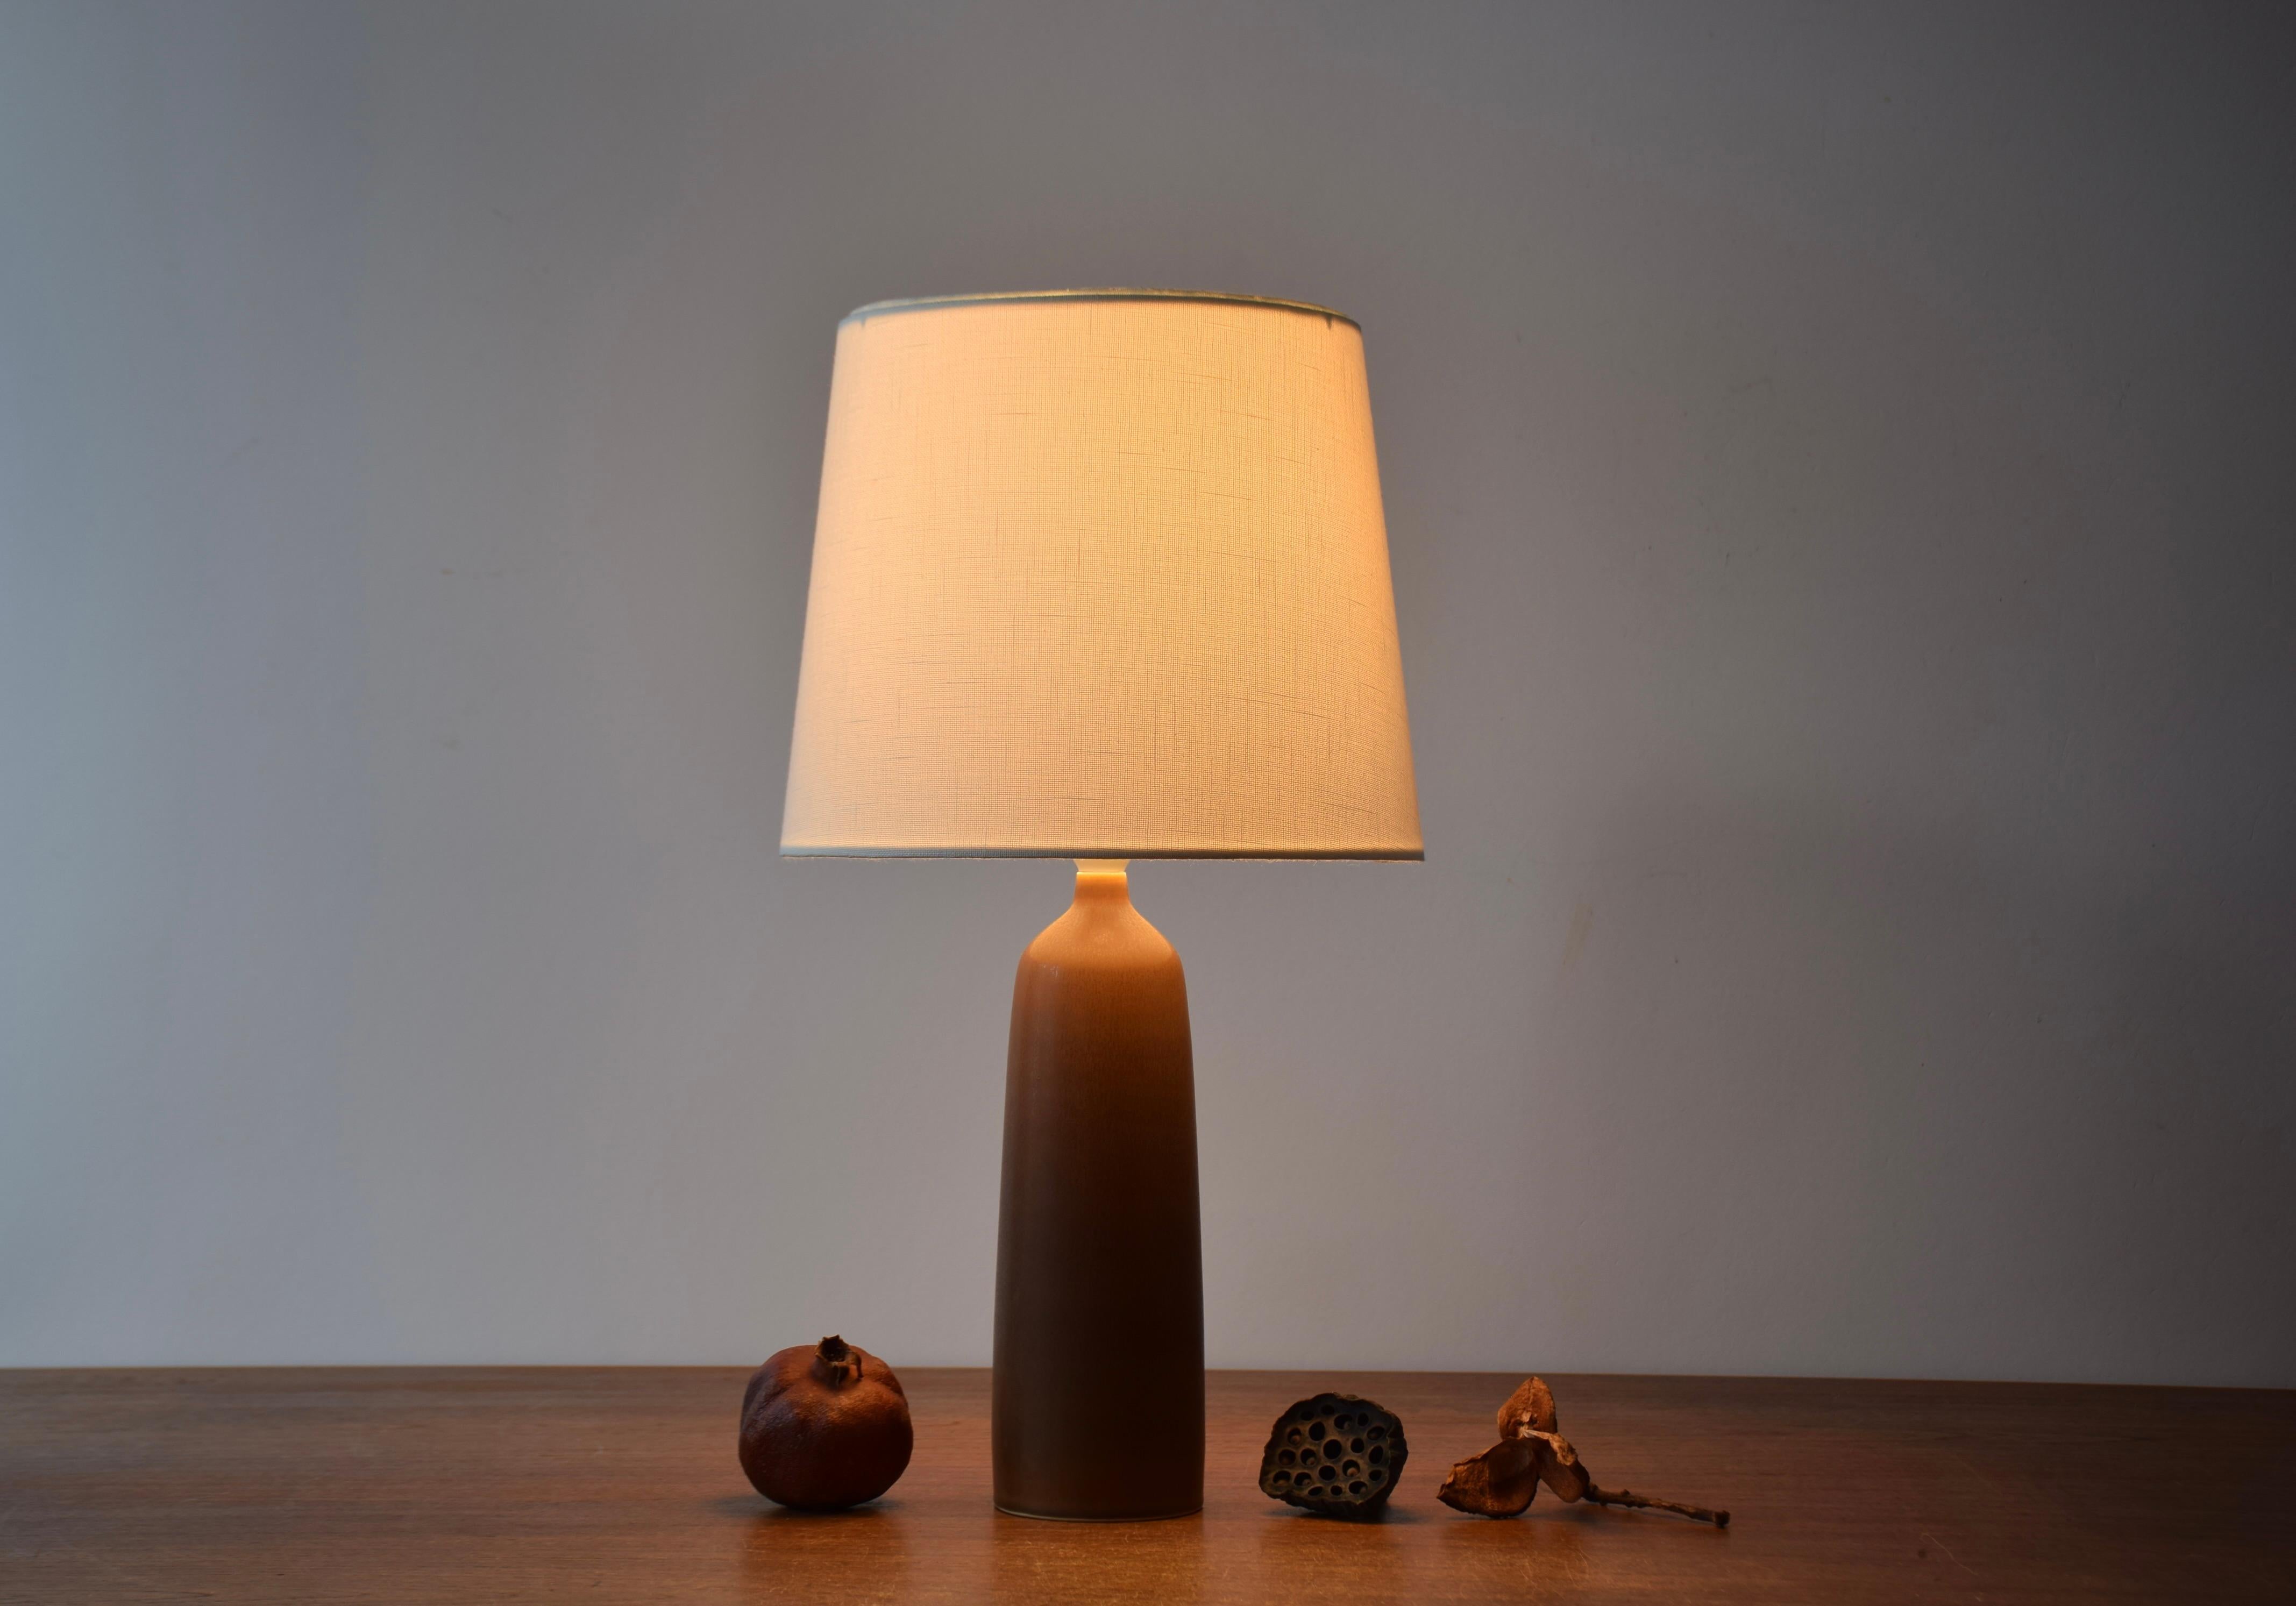 Lampe de table du milieu du siècle dernier de l'atelier de céramique danois Palshus.  
La lampe a été conçue par Per Linnemann-Schmidt et fabriquée vers les années 1950.

La lampe présente une glaçure HaresFur d'un brun chaud sur une forme